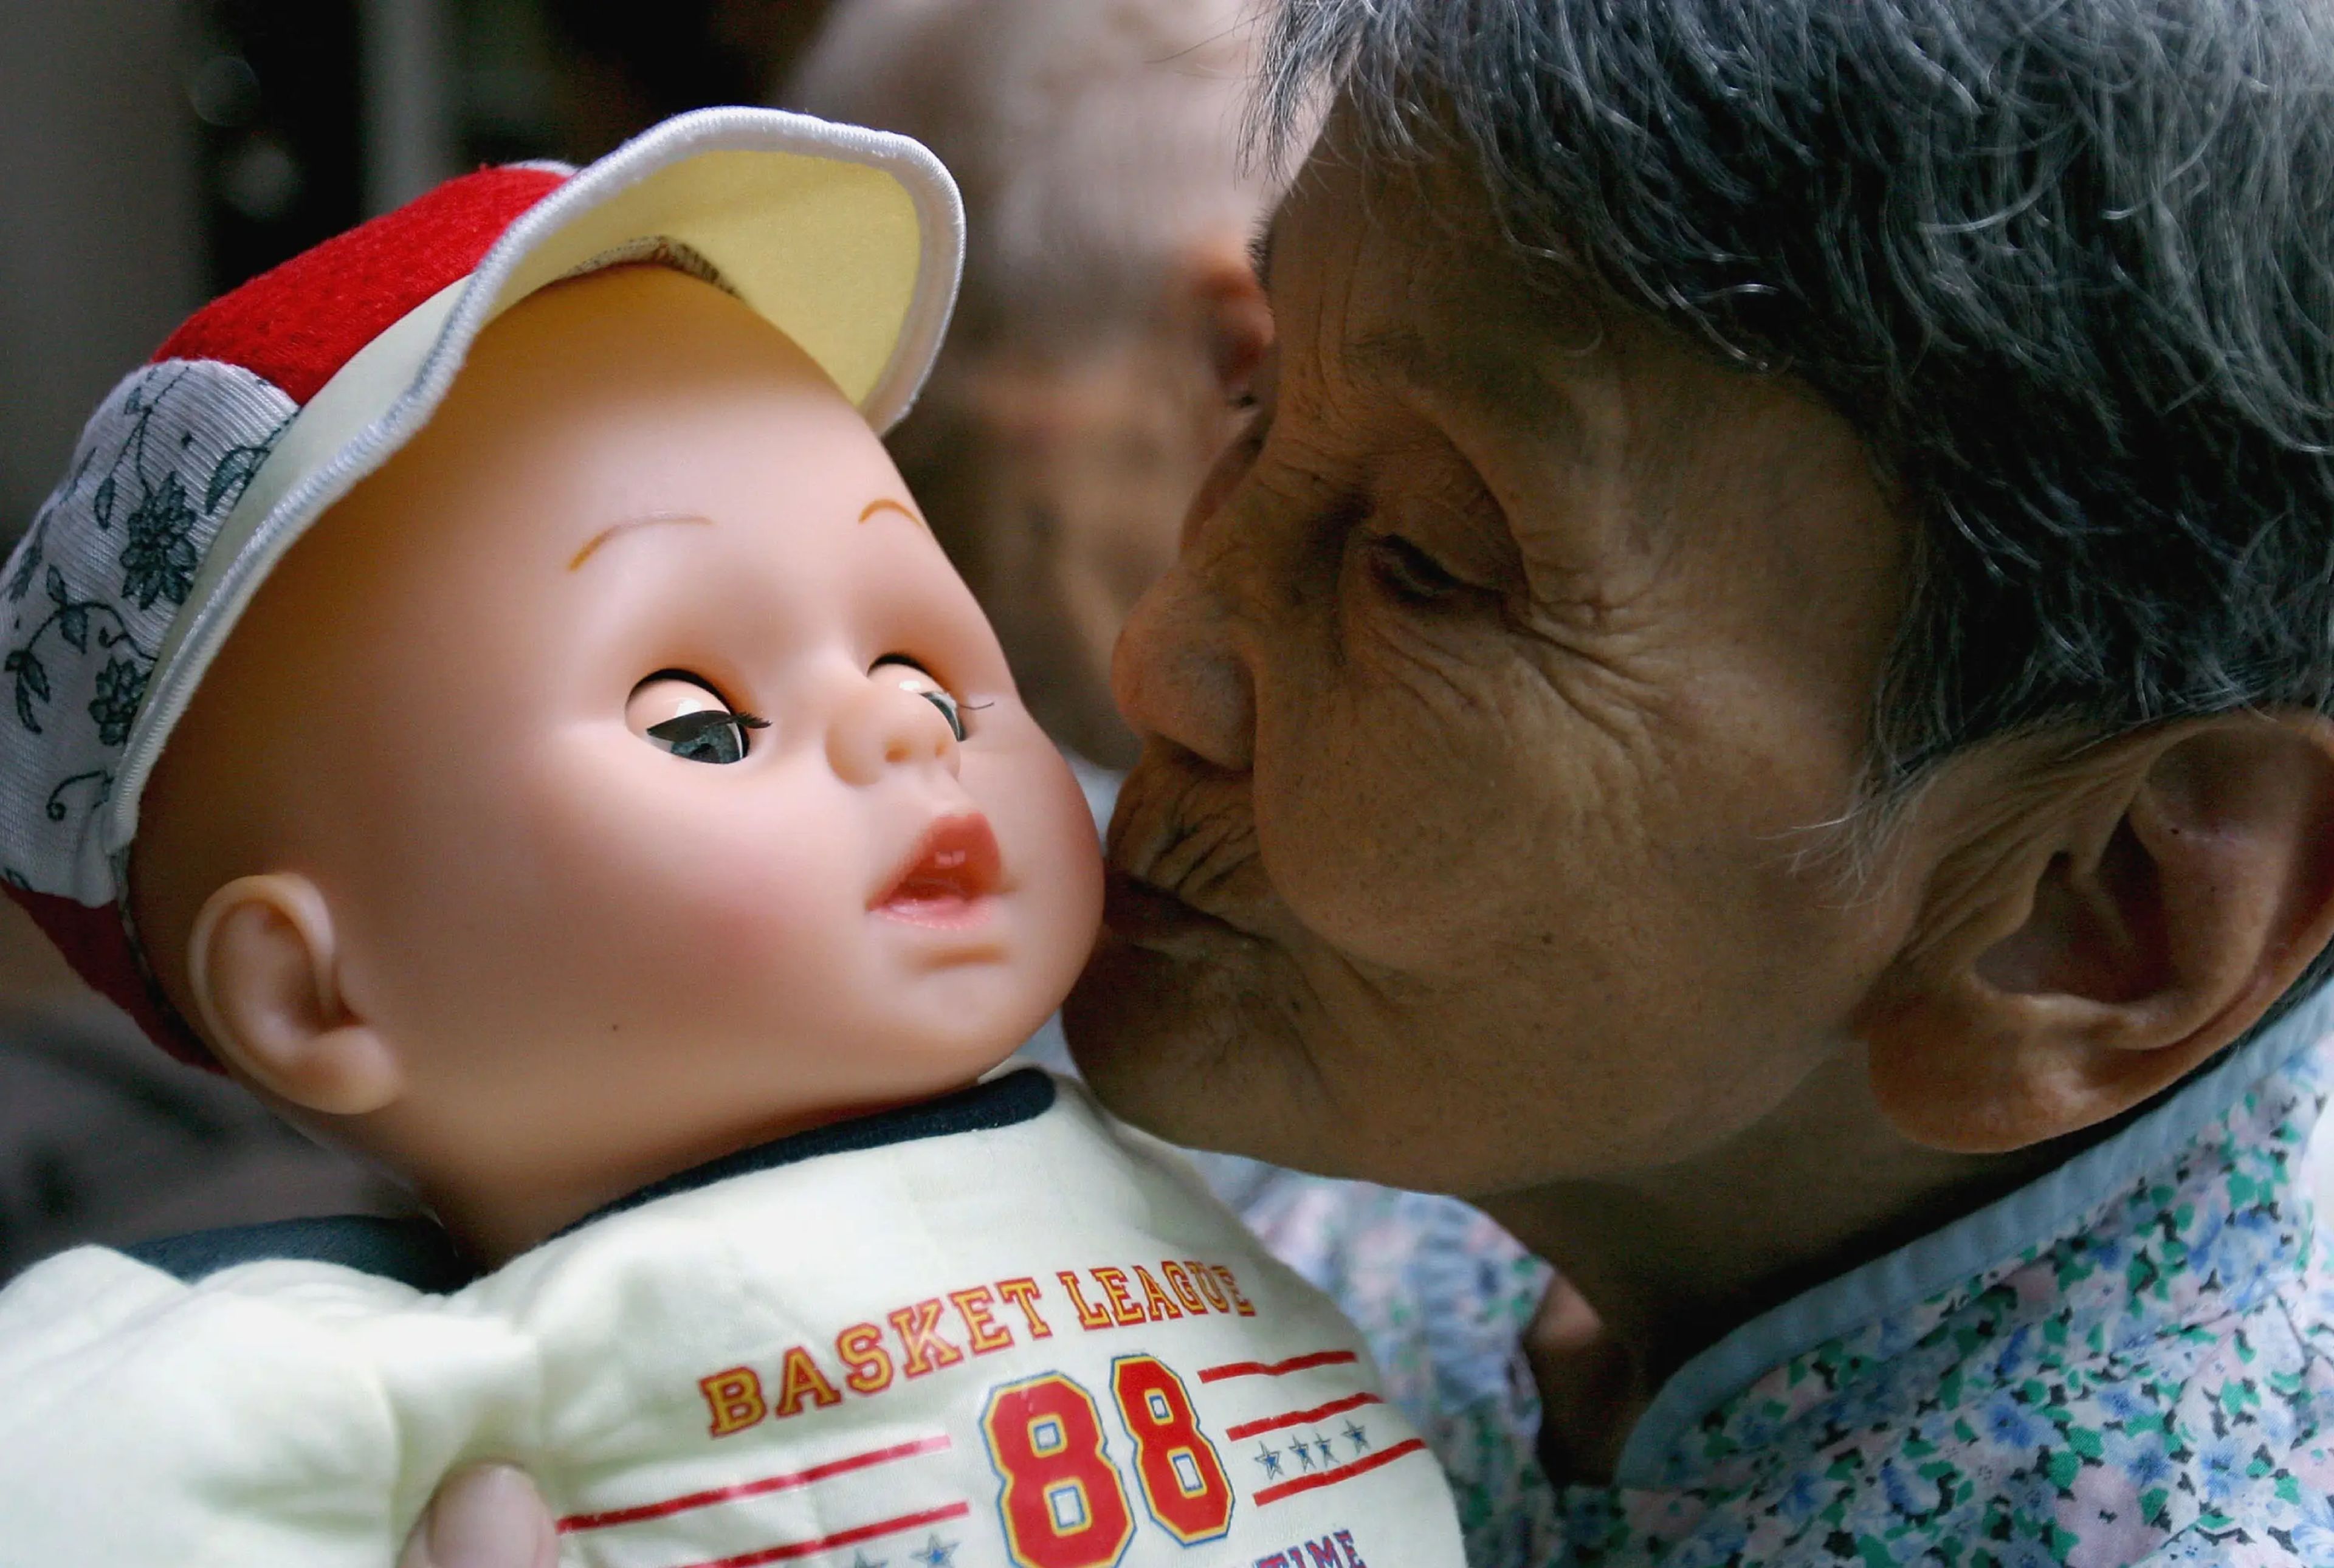 Una anciana con demencia recibe una muñeca que le ayuda a recordar su pasado.